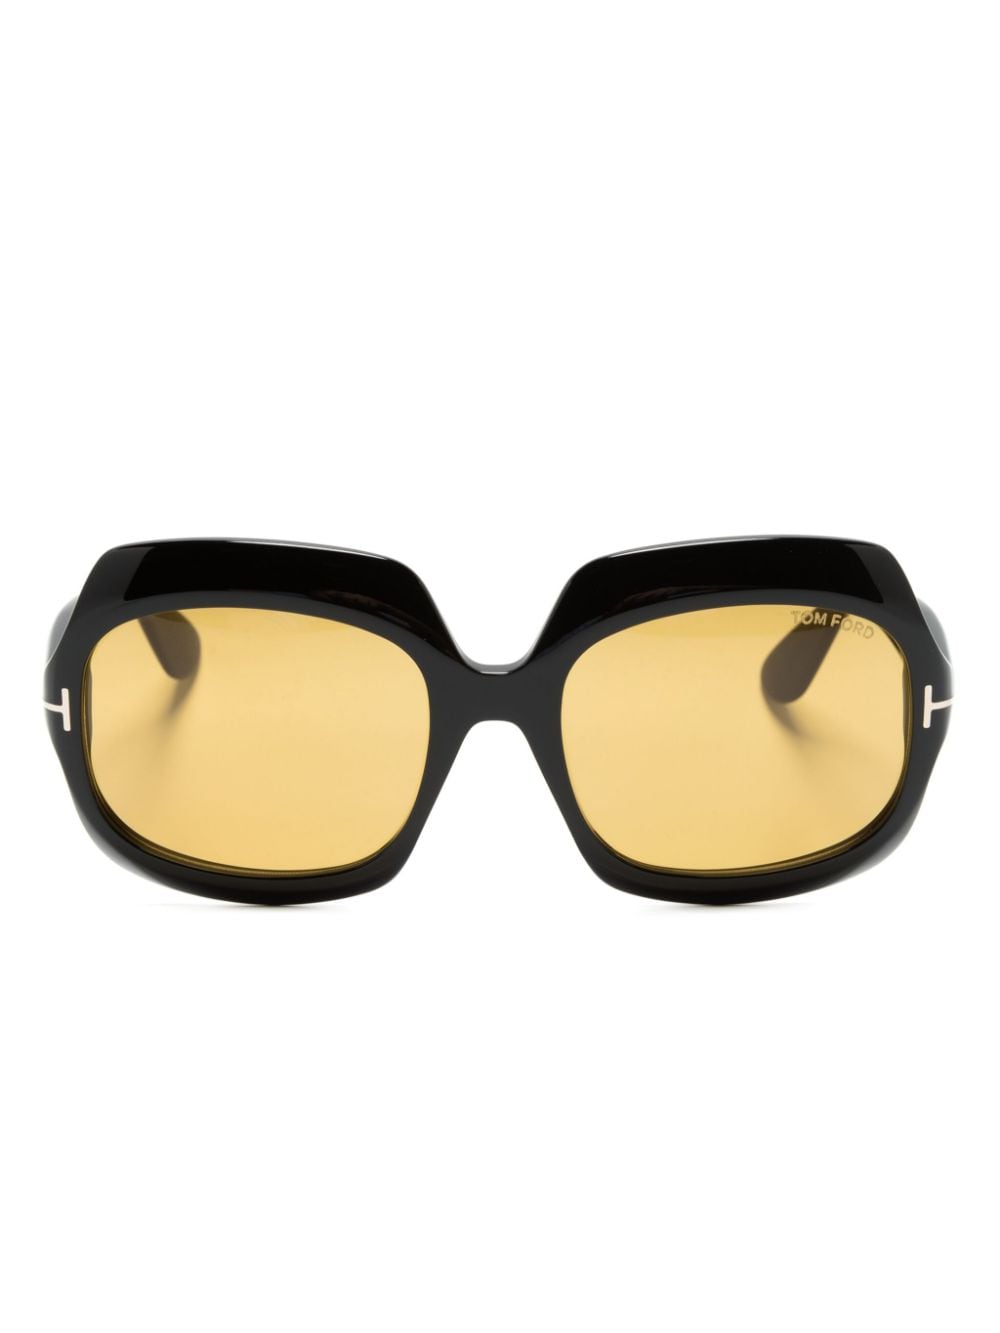 Ren oversize-frame sunglasses